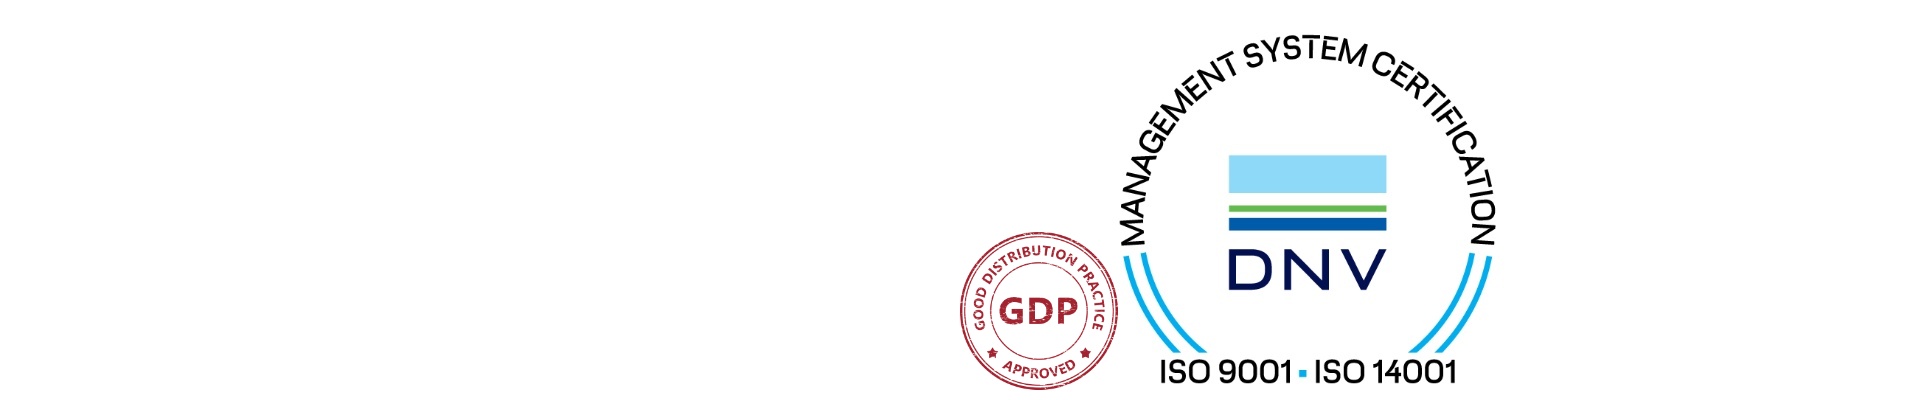 Die Qualitätssiegel ISO 9001:2015, ISO 14001:2015 und GDP auf weißem Hintergrund 